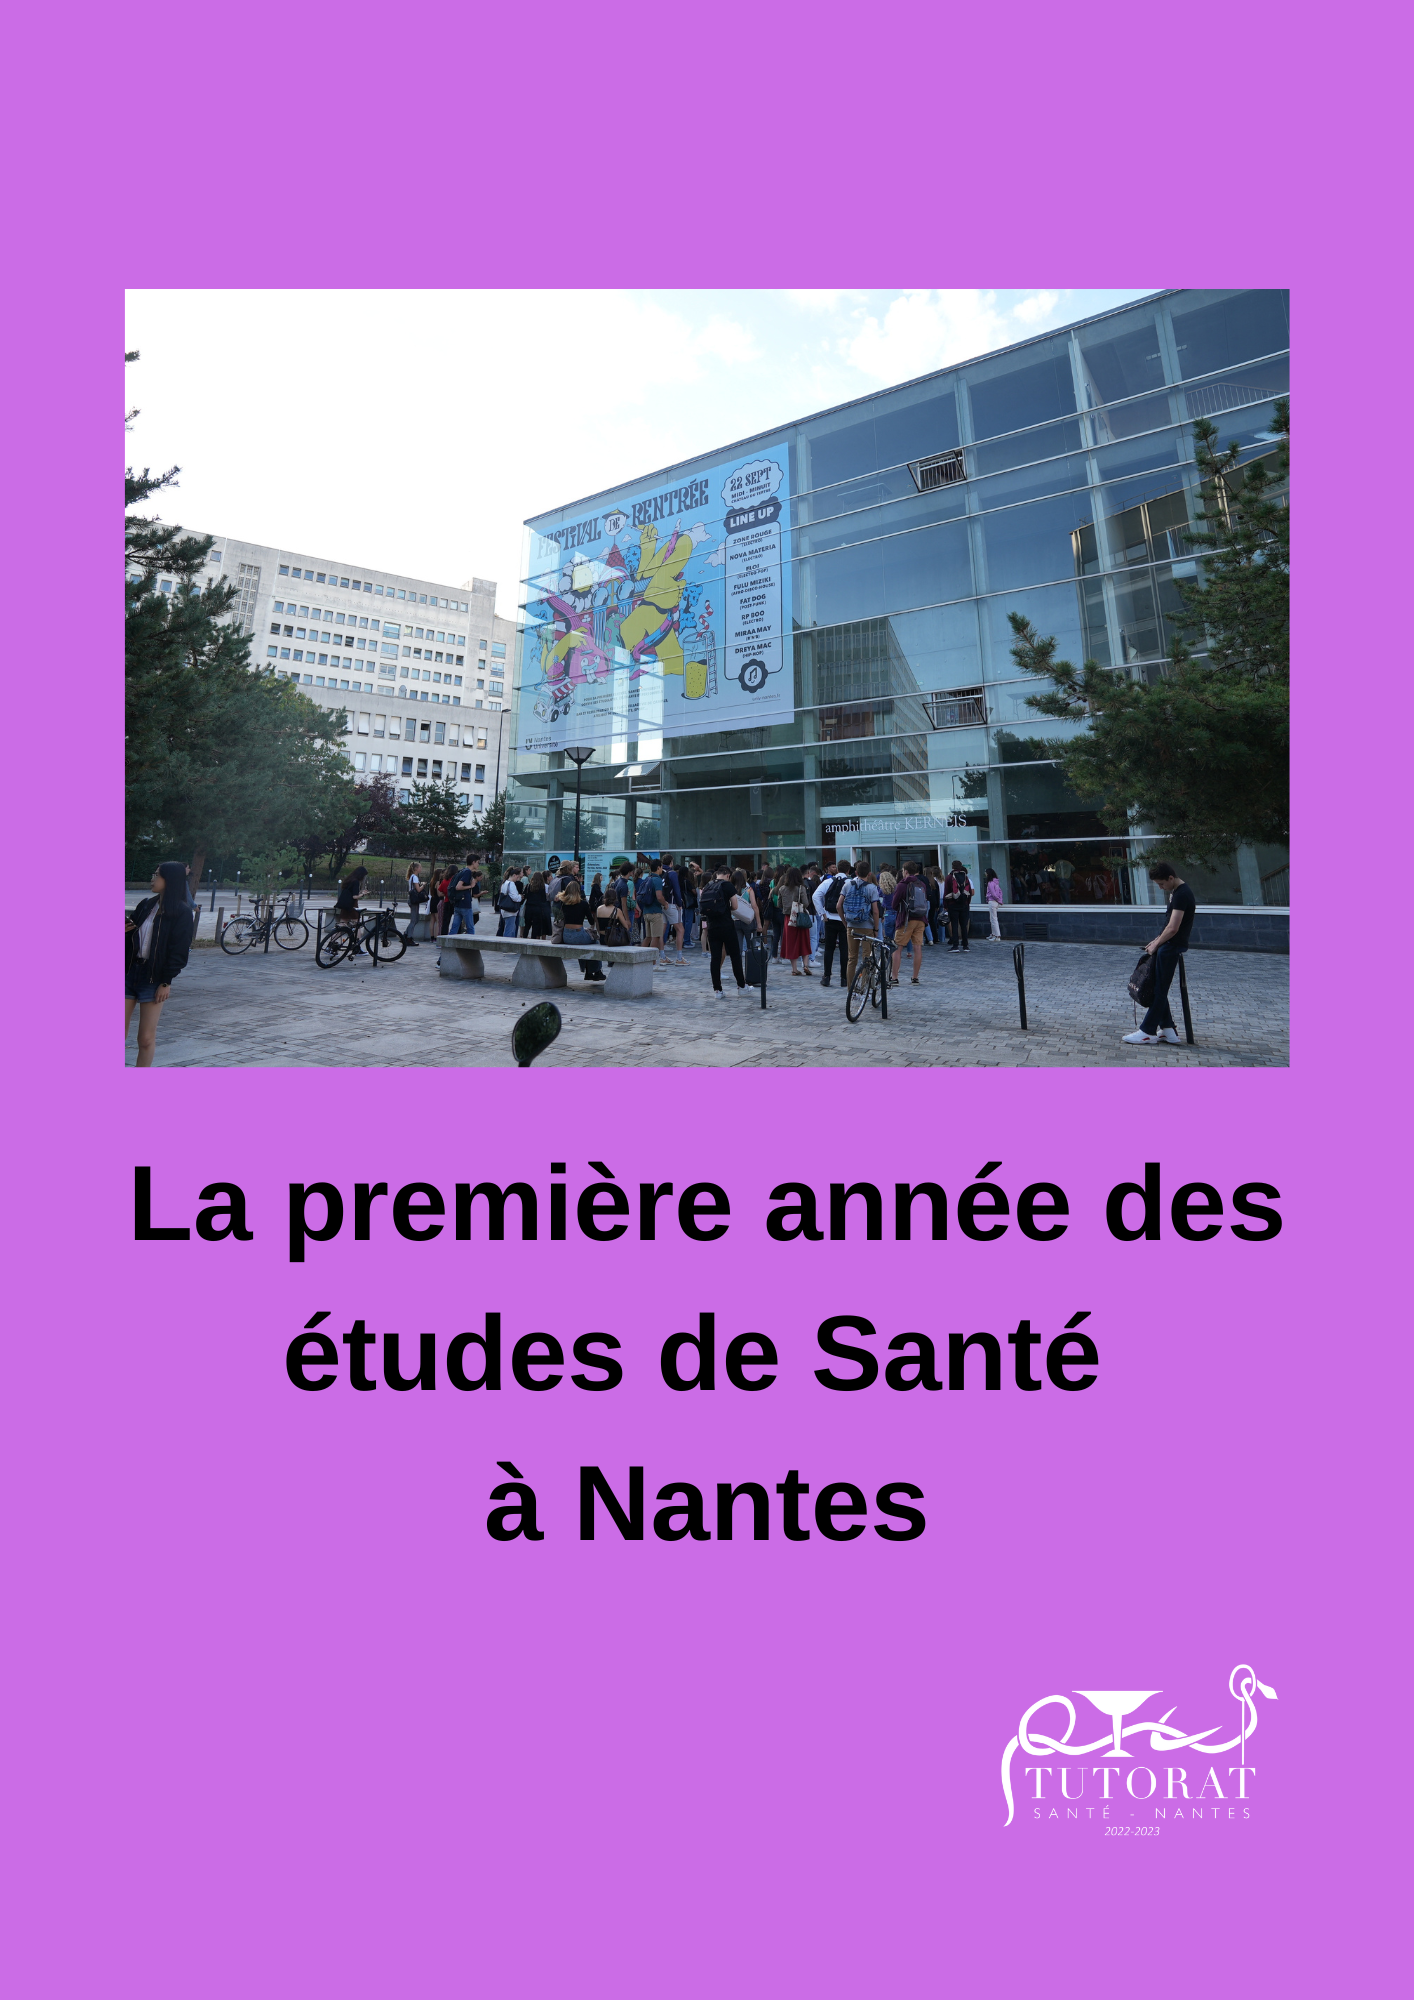 1ère année de santé à Nantes